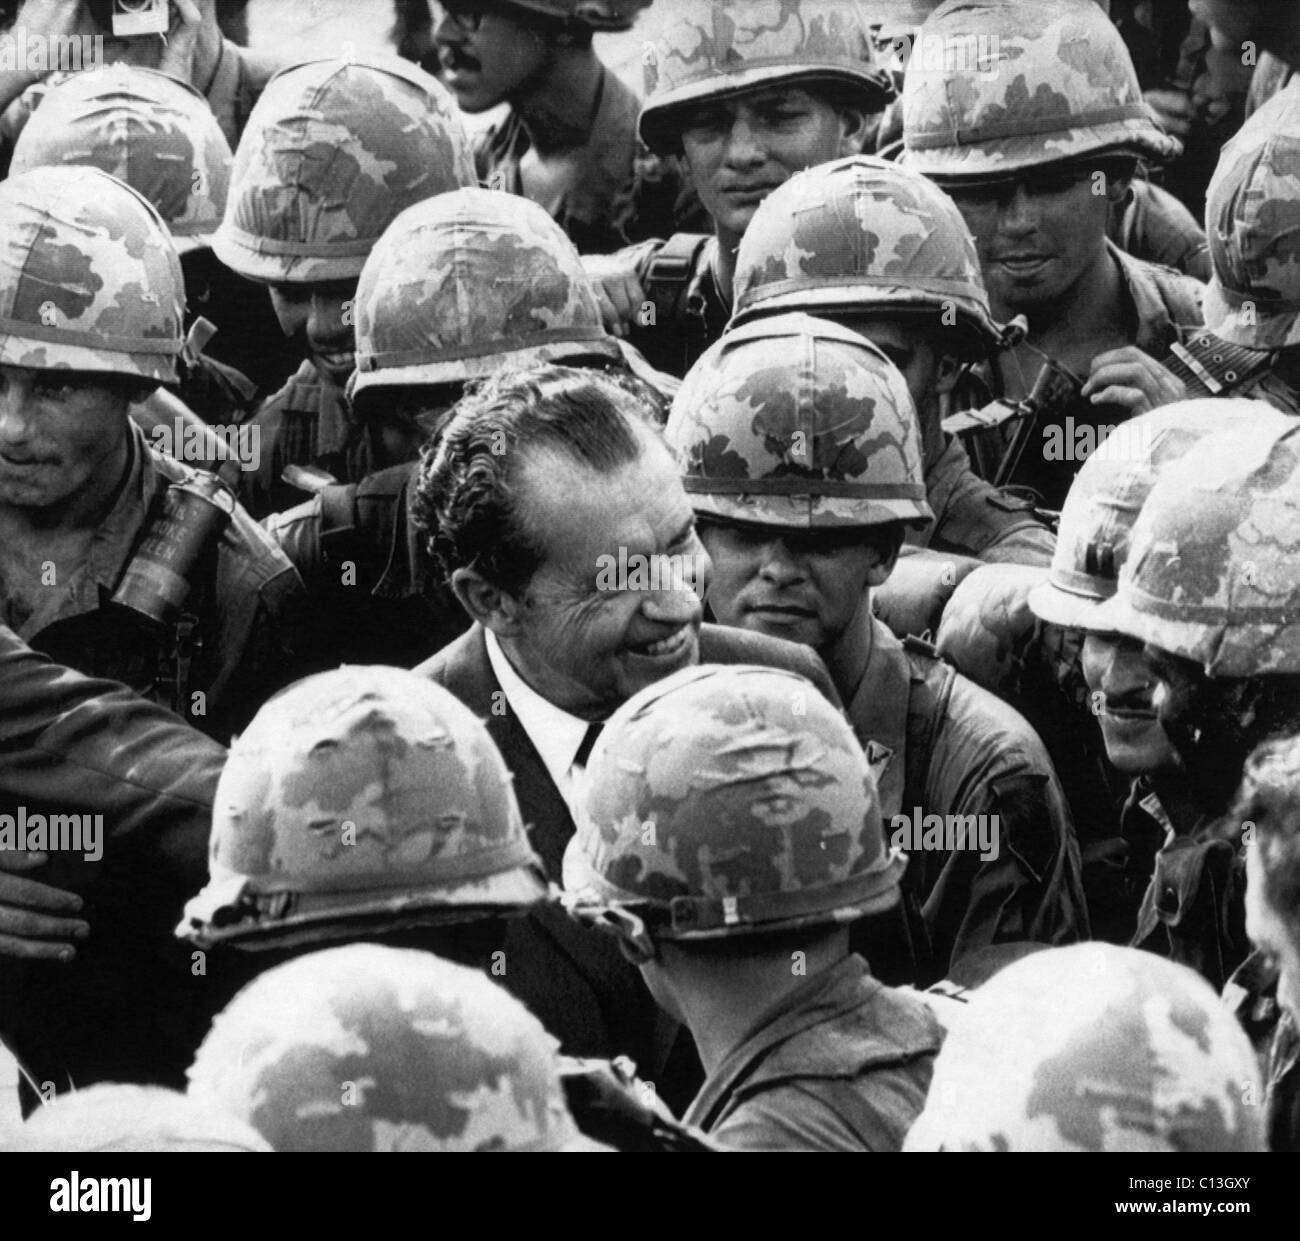 1969 US-Präsidentschaft, Vietnam-Krieg. Präsident Richard Nixon Besuch der US-Armee erste Infanteriedivision (Big Red 1) in Vietnam, Juli 1969. Stockfoto